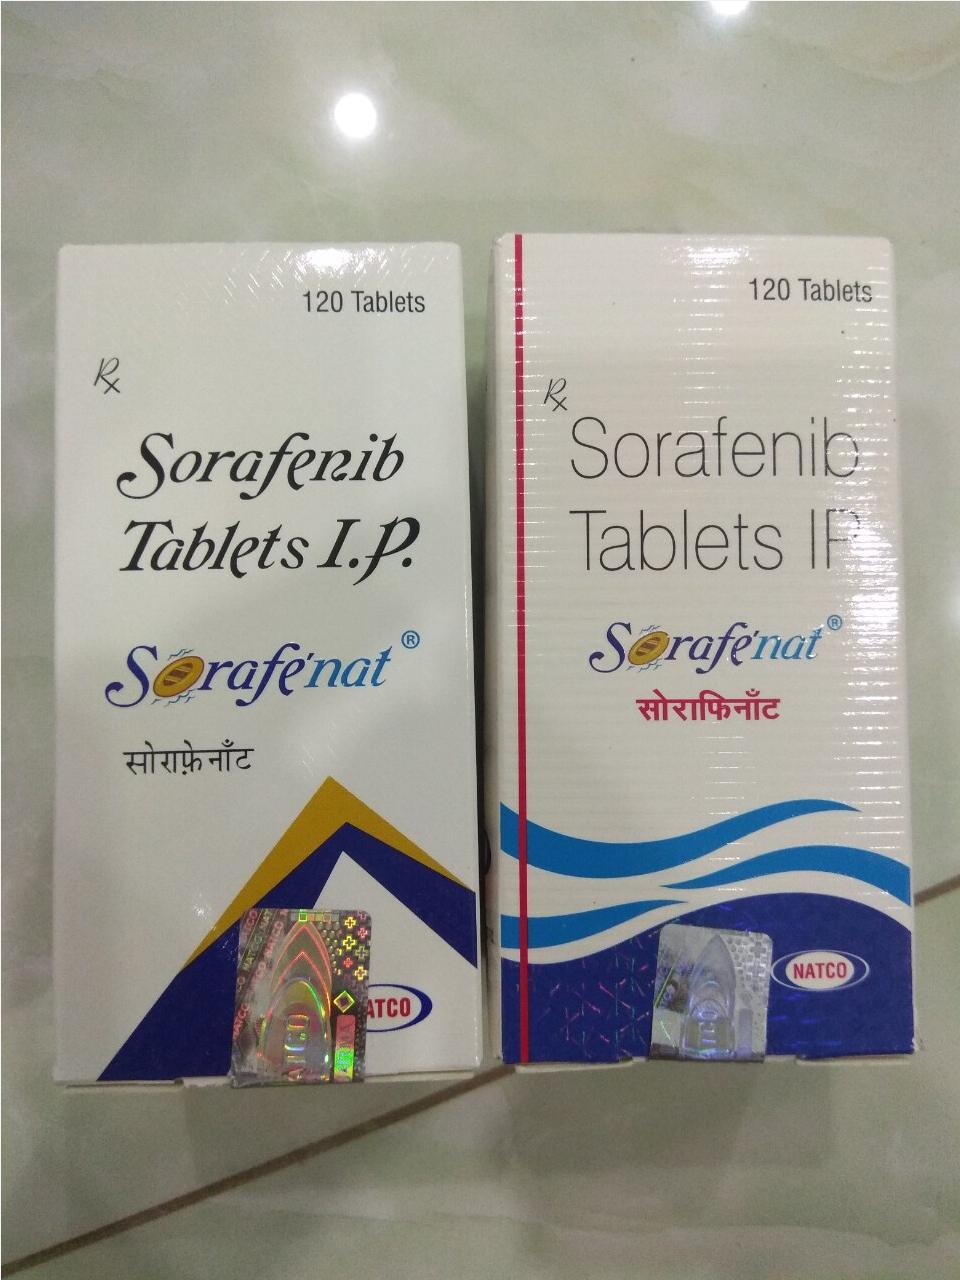 Thuốc Sorafenib tablet ip mua ở đâu giá bao nhiêu?